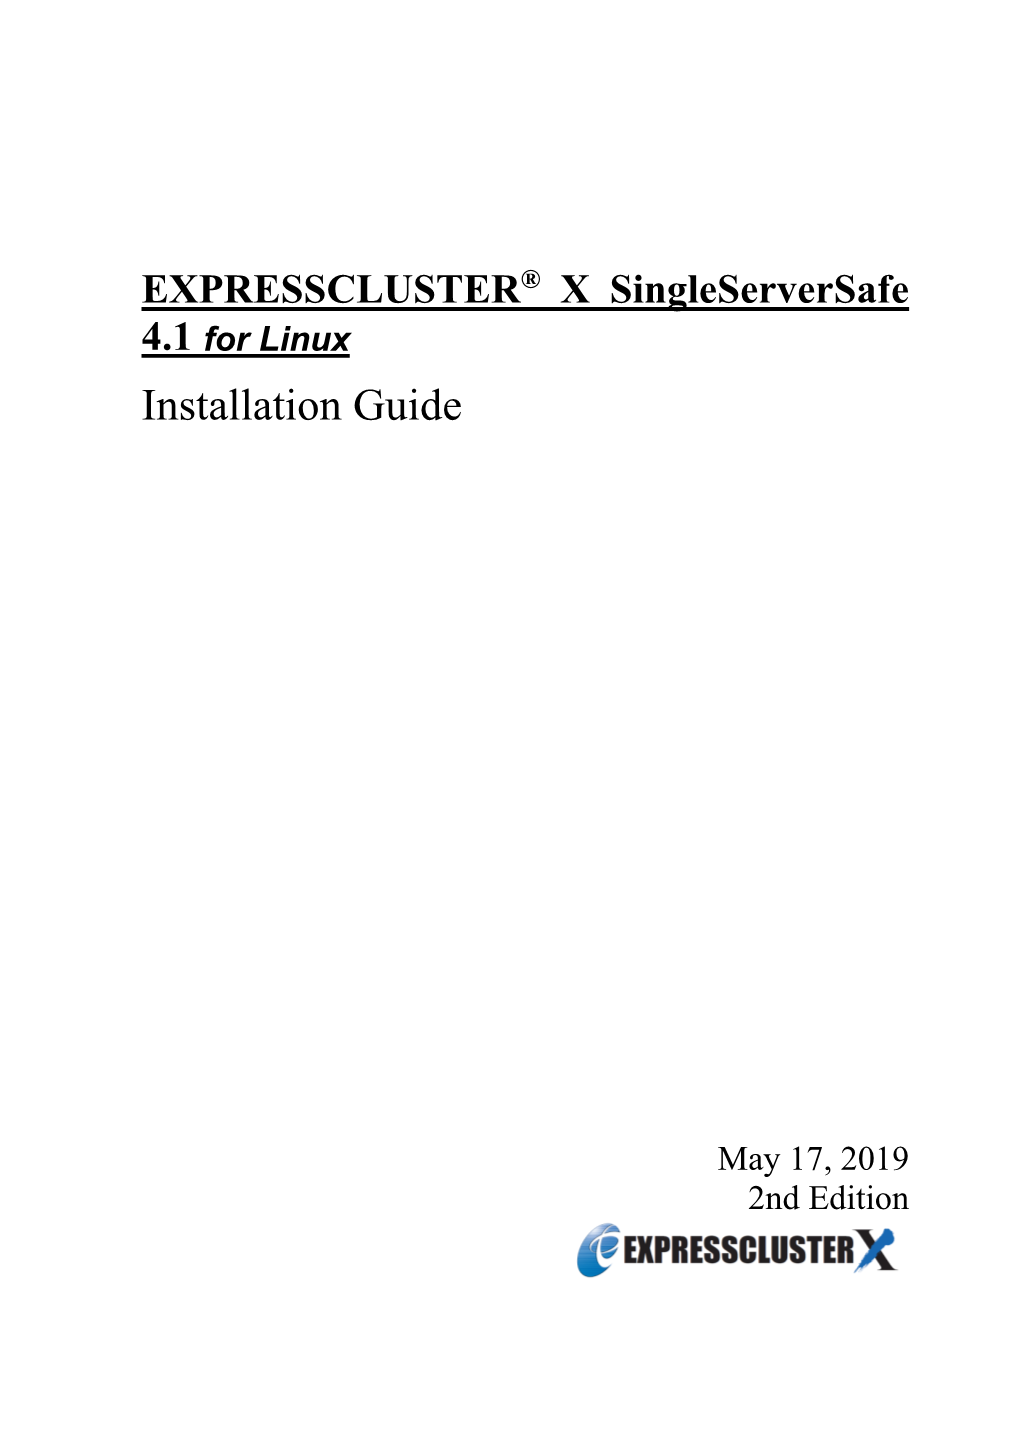 EXPRESSCLUSTER X Singleserversafe 4.1 for Linux Installation Guide 14 What Is EXPRESSCLUSTER X Singleserversafe?